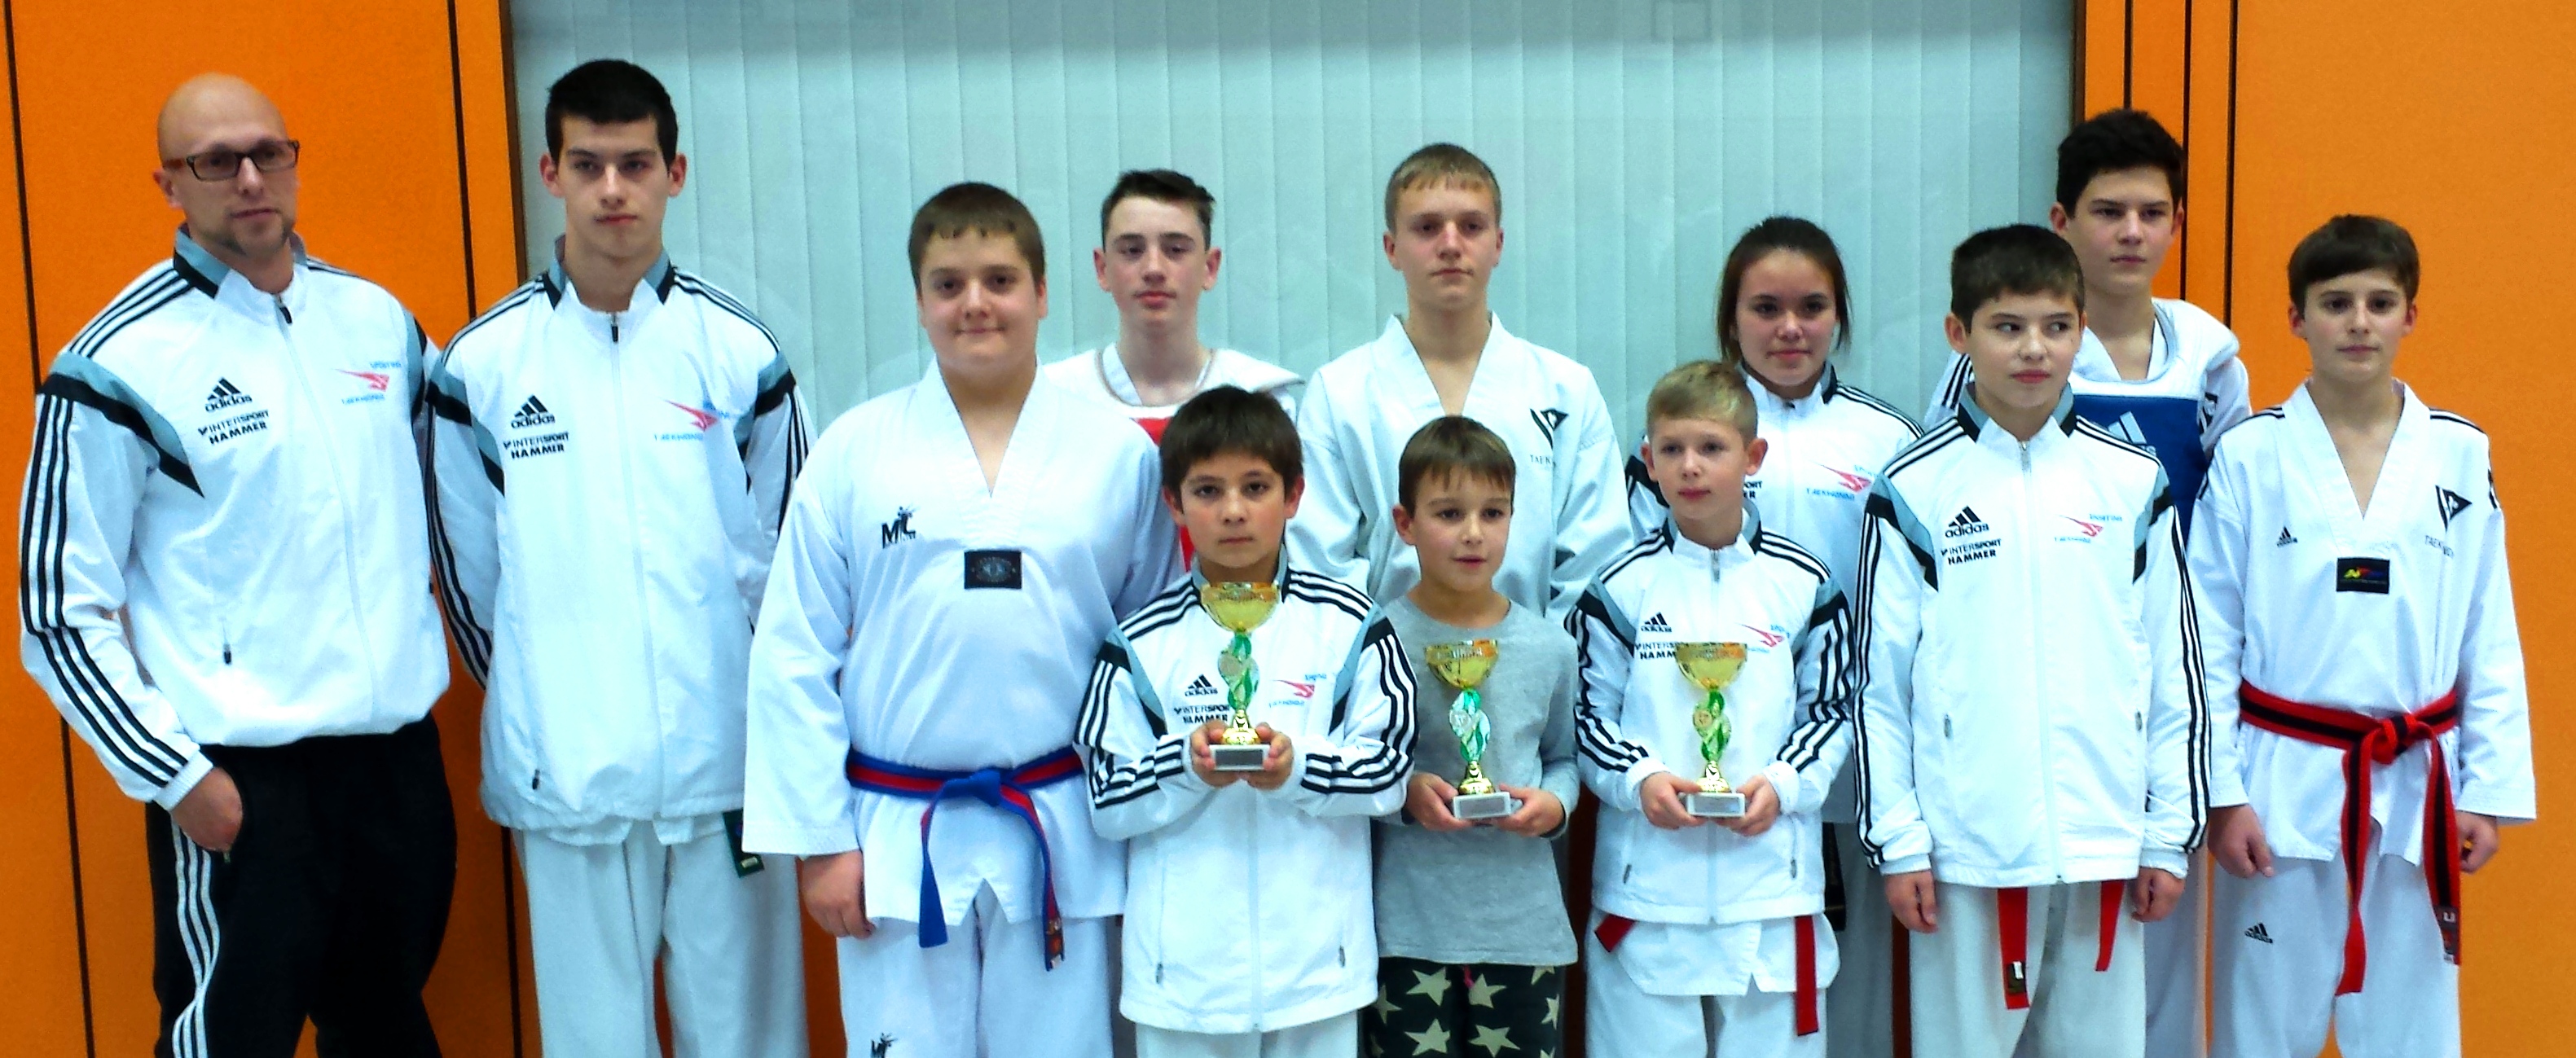 Internationale Glanzleistung in Luxemburg – 11 SPORTING Taekwondo Kämpfer holen 8x Gold, 2x Silber und 1x Bronze